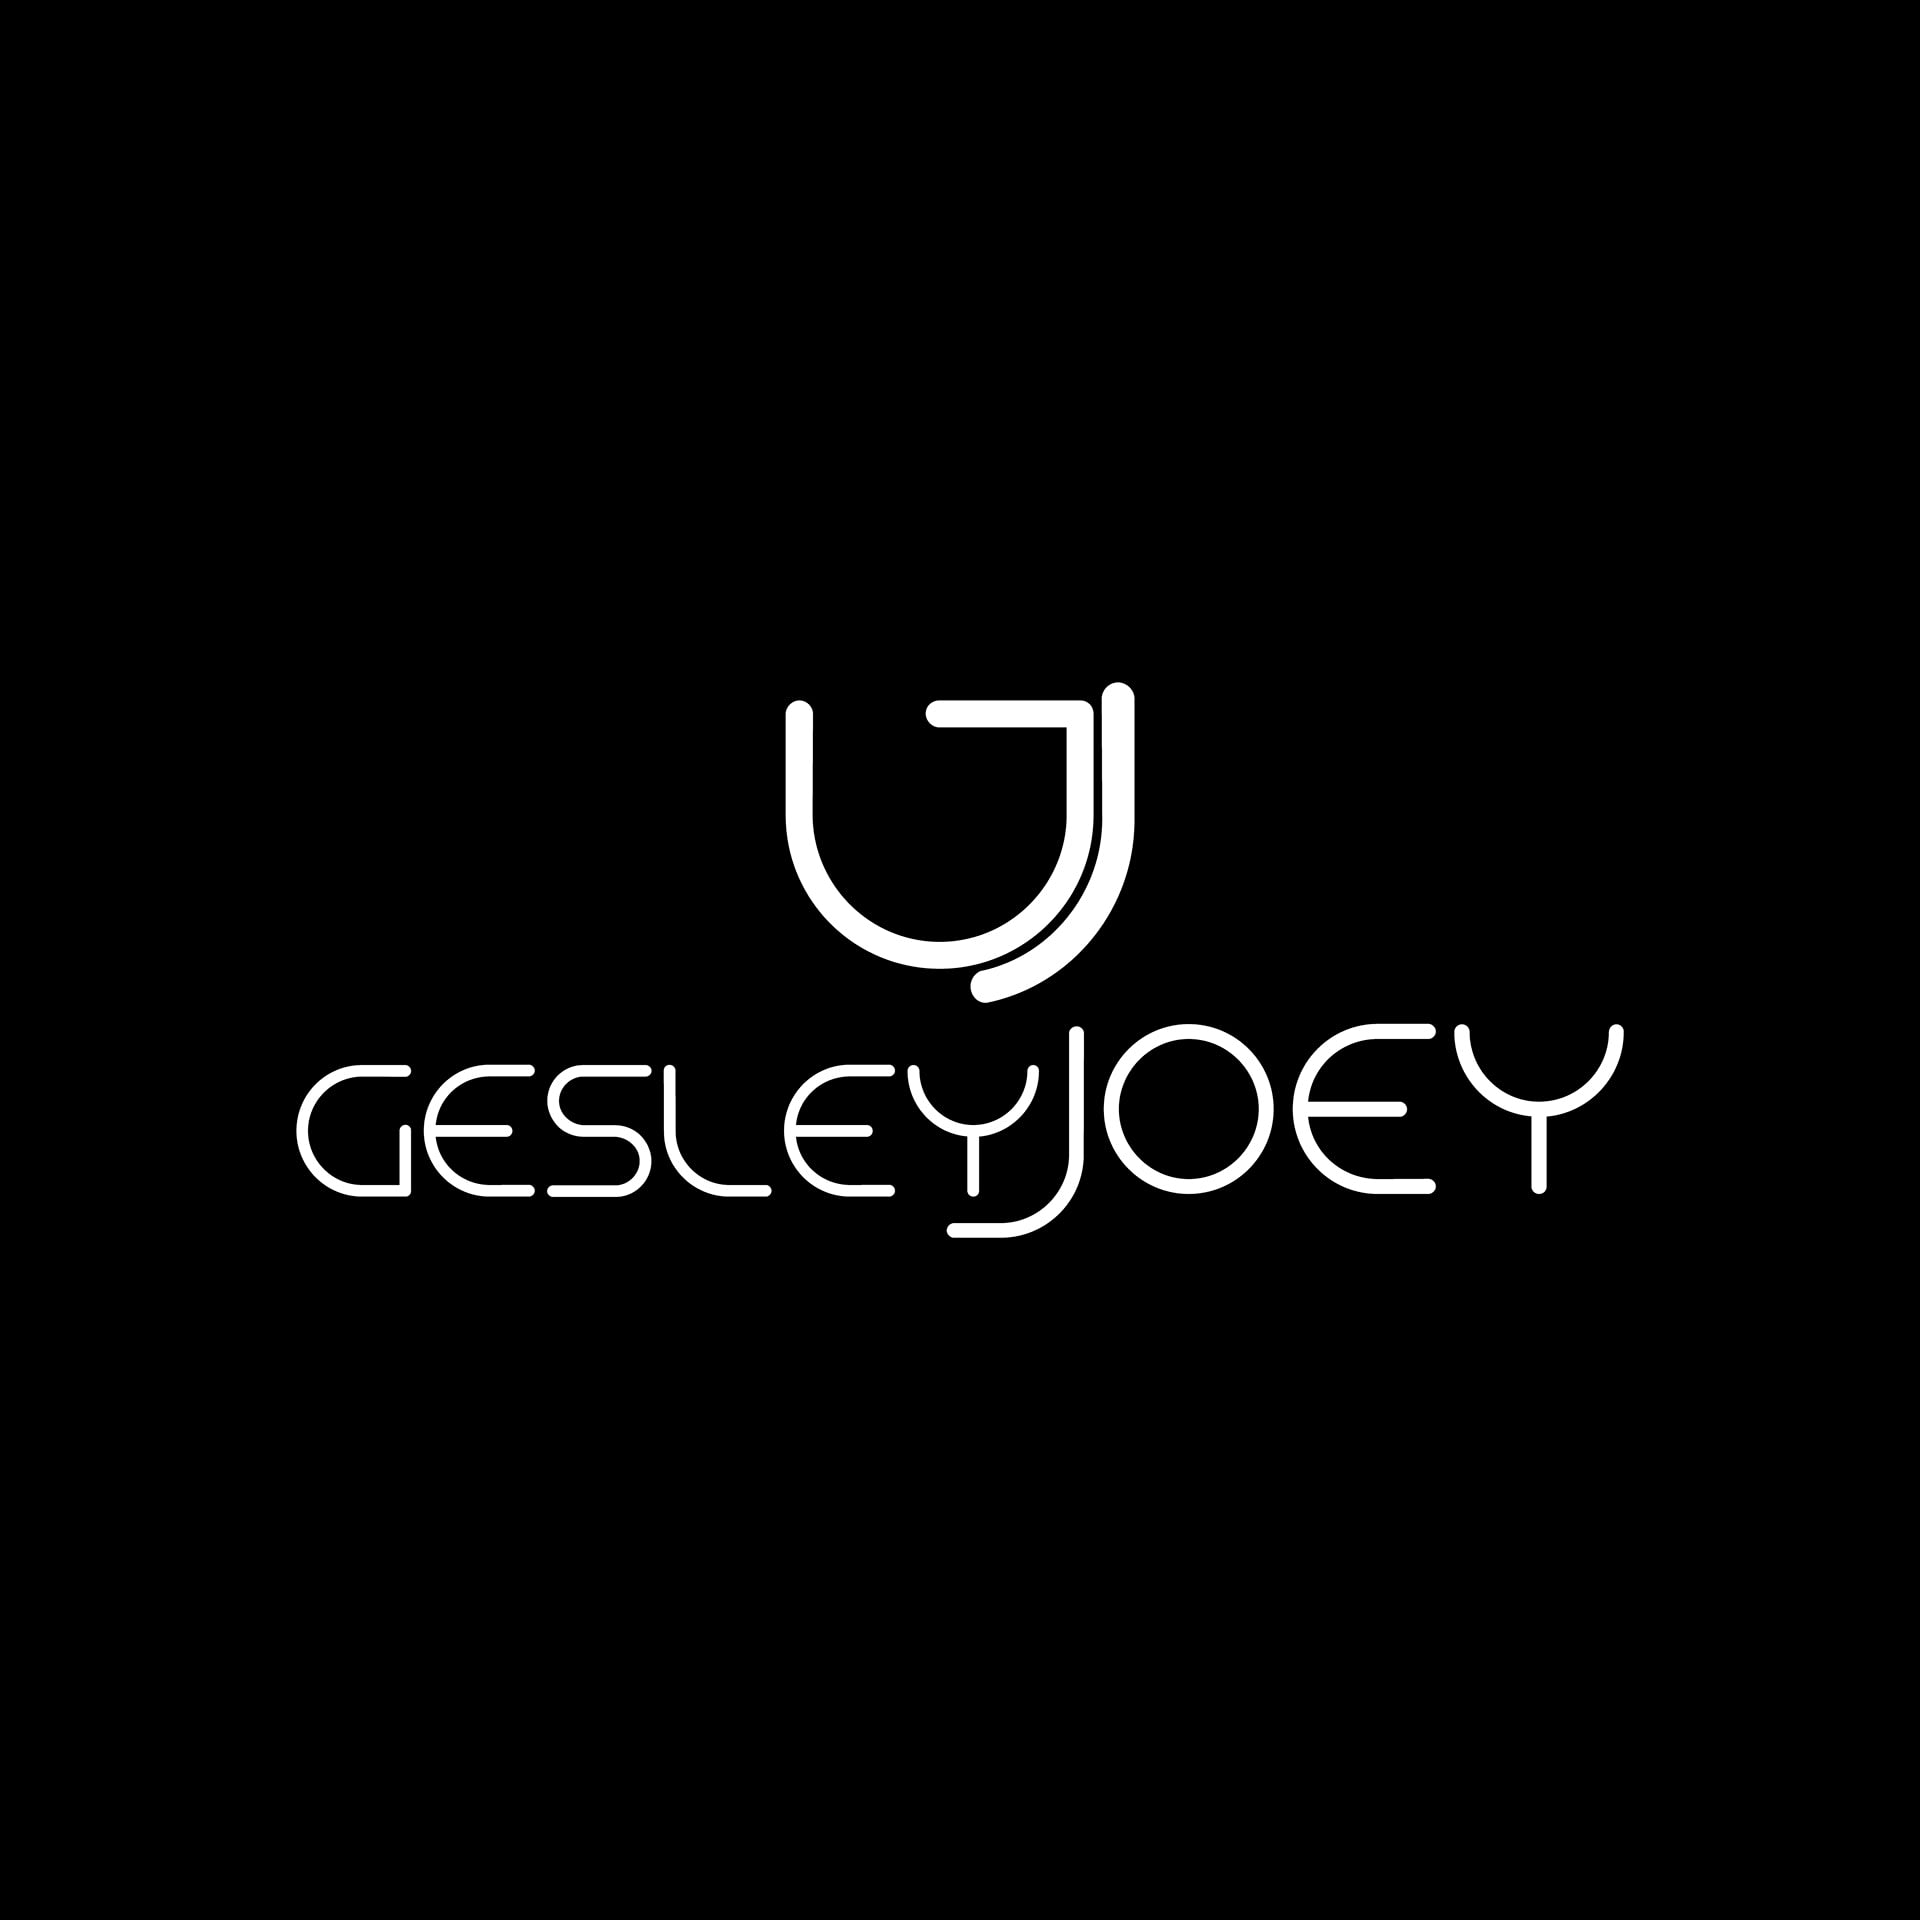 GesleyJoey